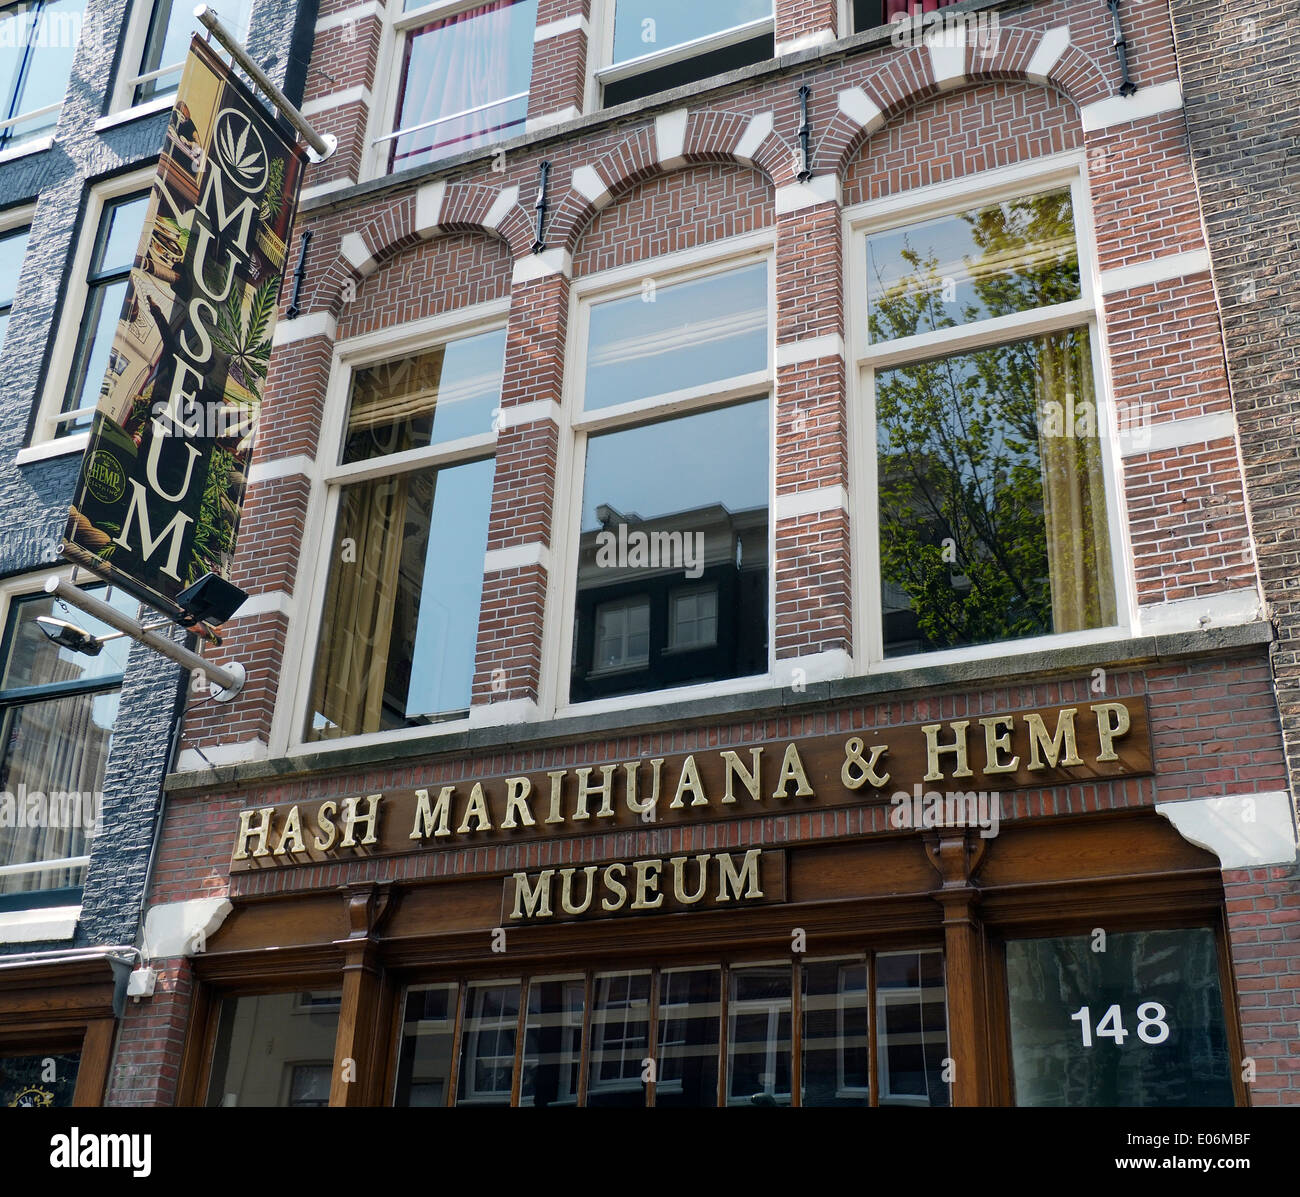 Hash Marijuana & Hemp Museum in Amsterdam Stock Photo